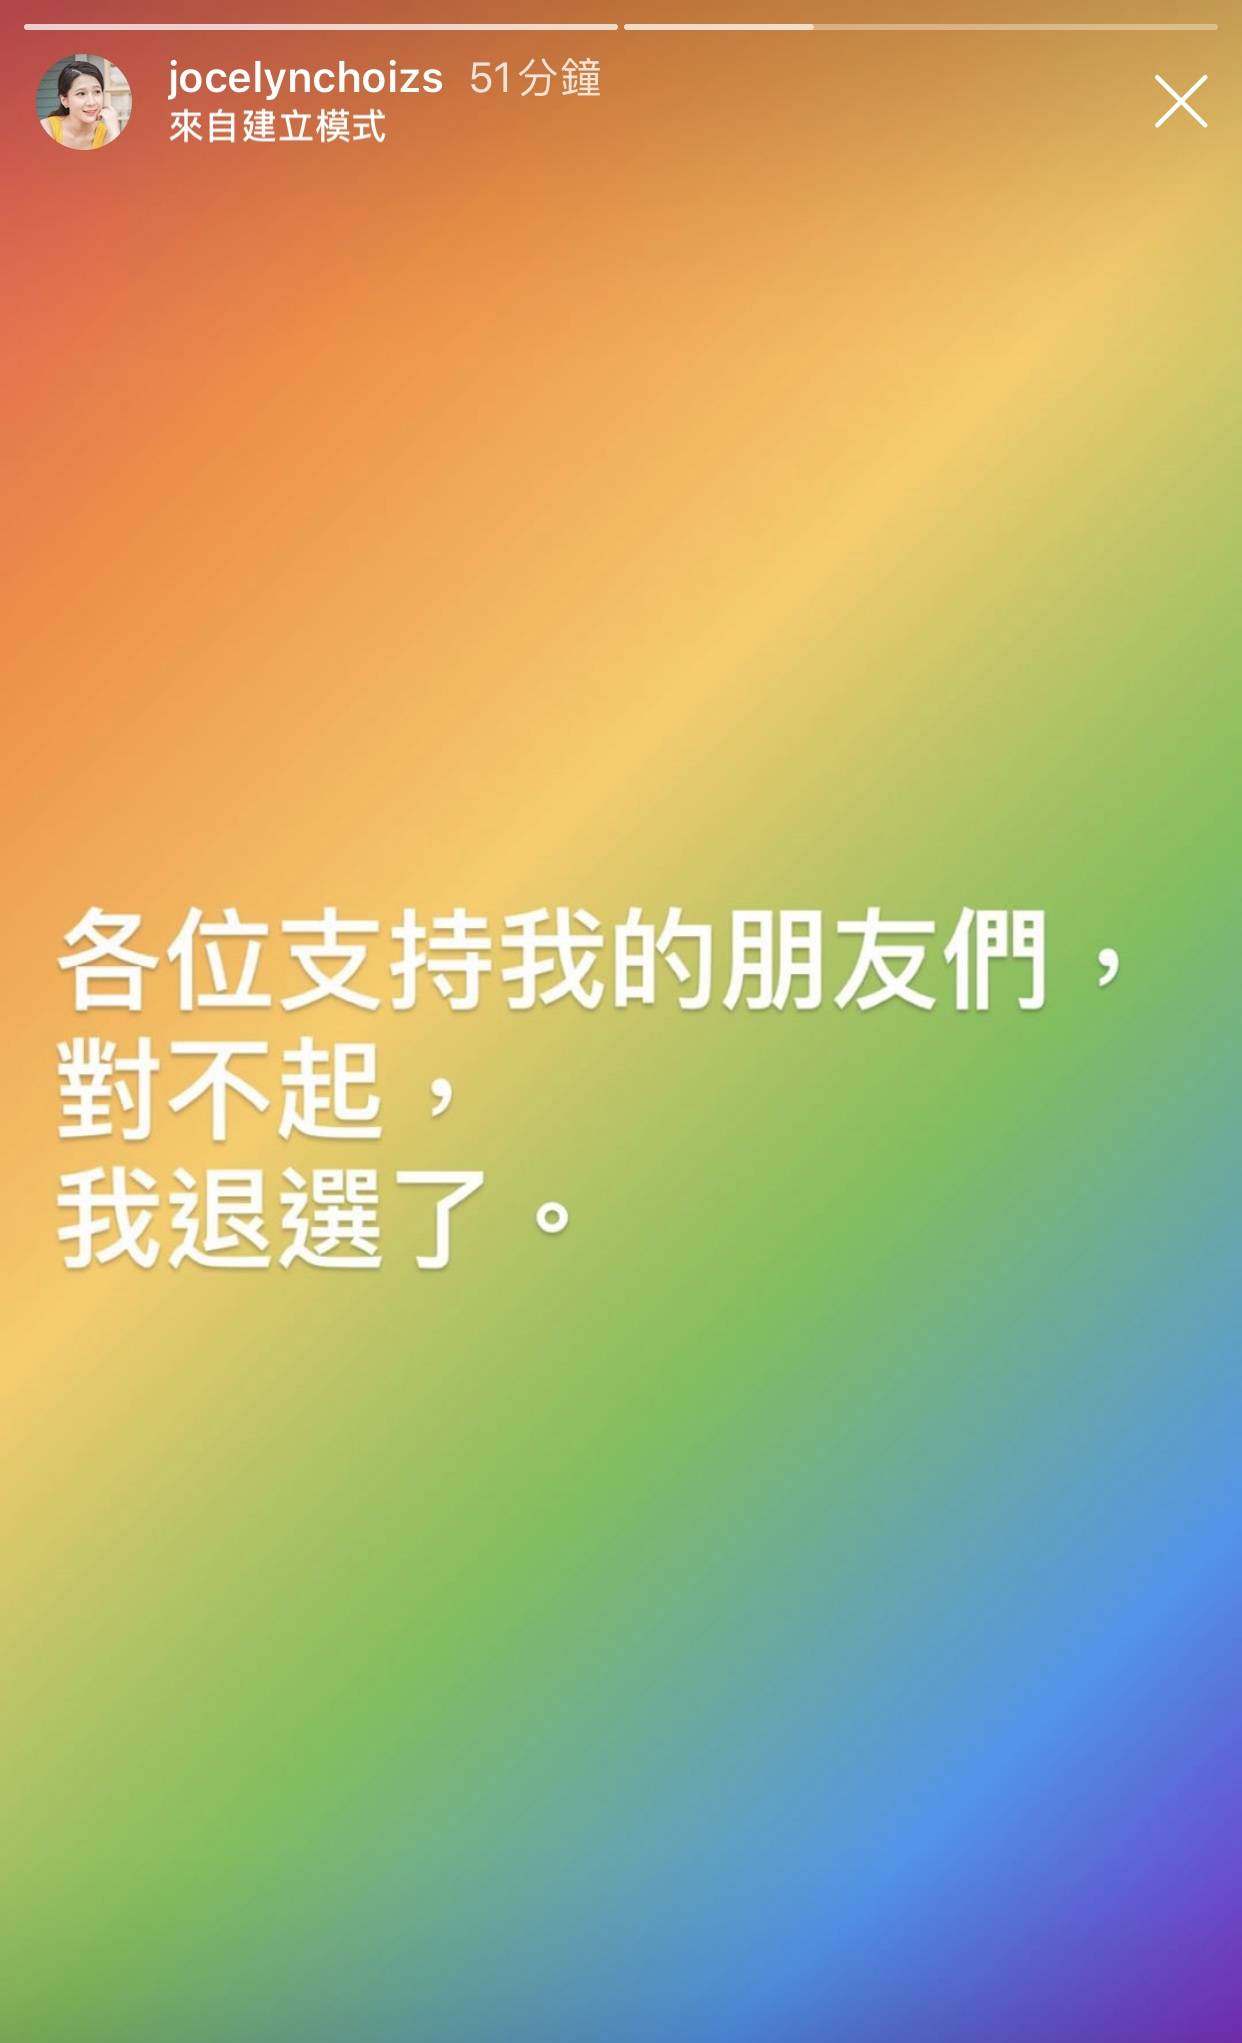 蔡頌思在IG向支持者公布自己退選了。